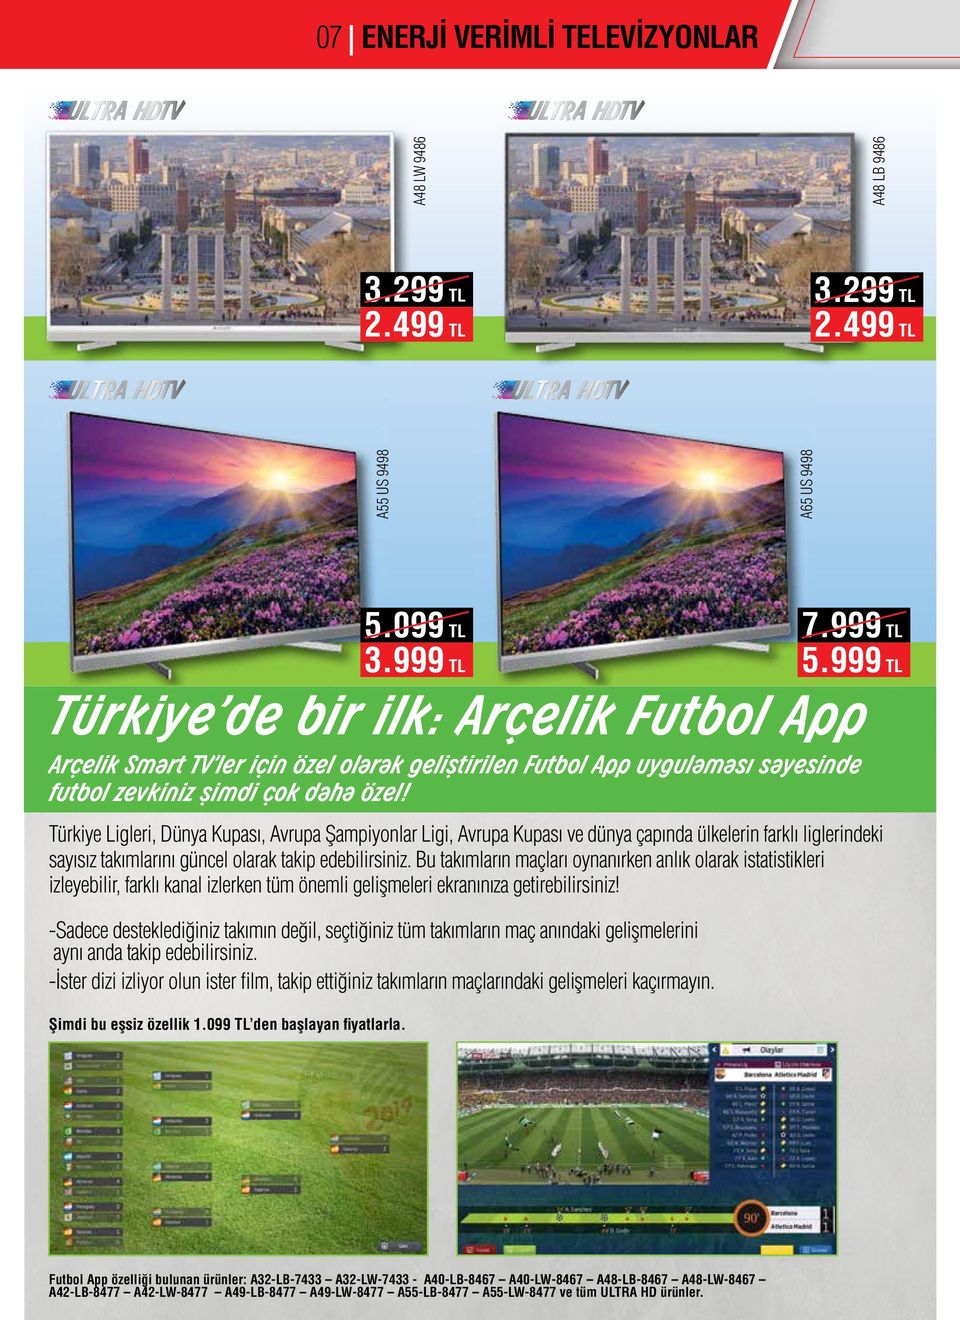 Türkiye Ligleri, Dünya Kupası, Avrupa Şampiyonlar Ligi, Avrupa Kupası ve dünya çapında ülkelerin farklı liglerindeki sayısız takımlarını güncel olarak takip edebilirsiniz.